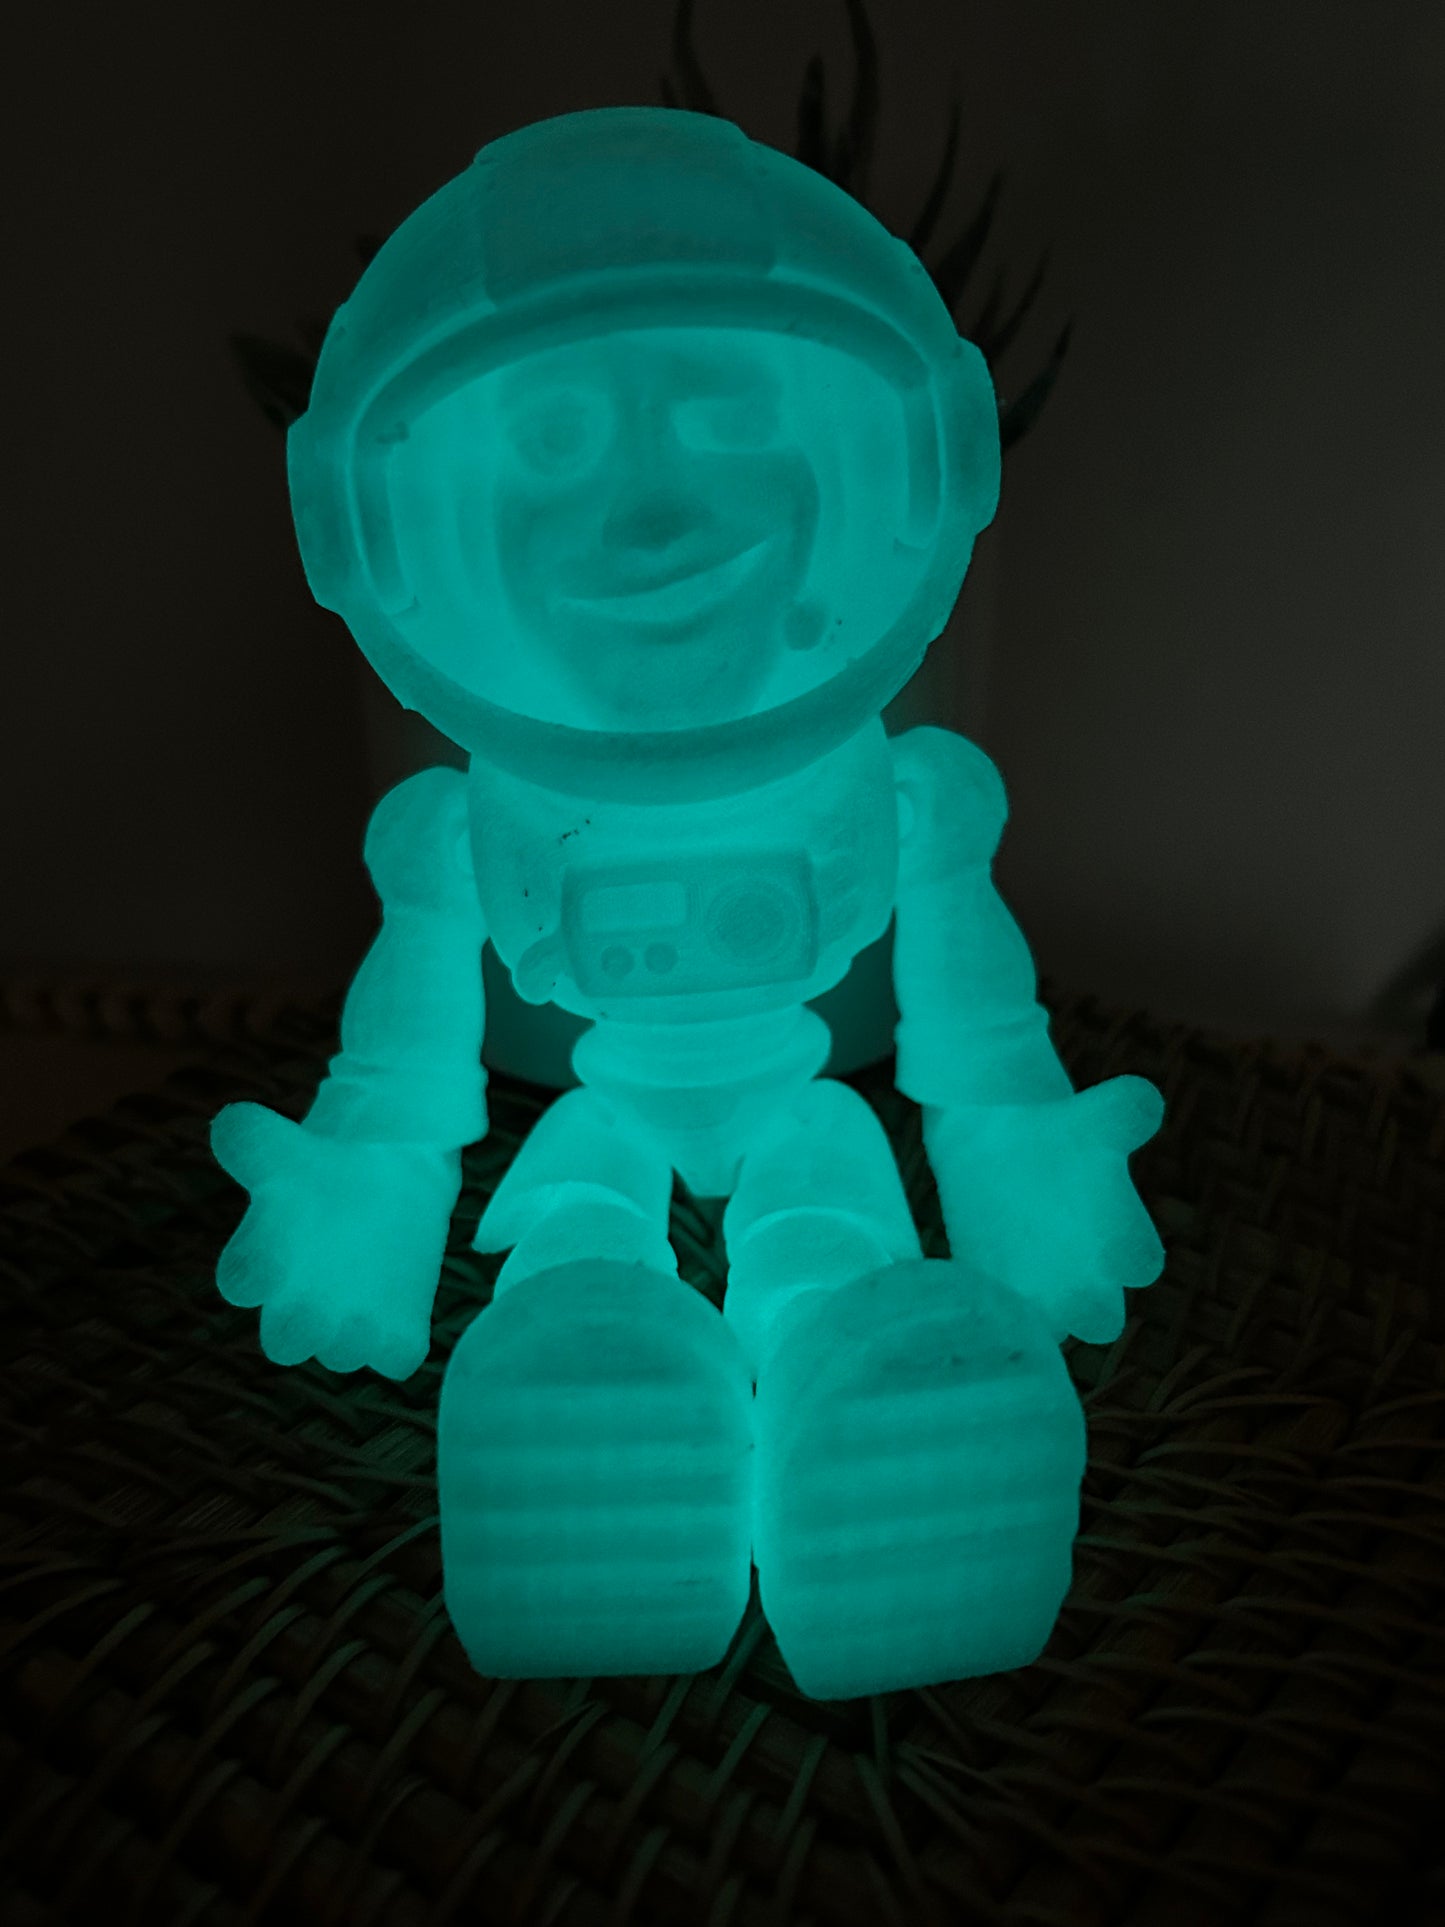 Astronaut guy-glow in the dark